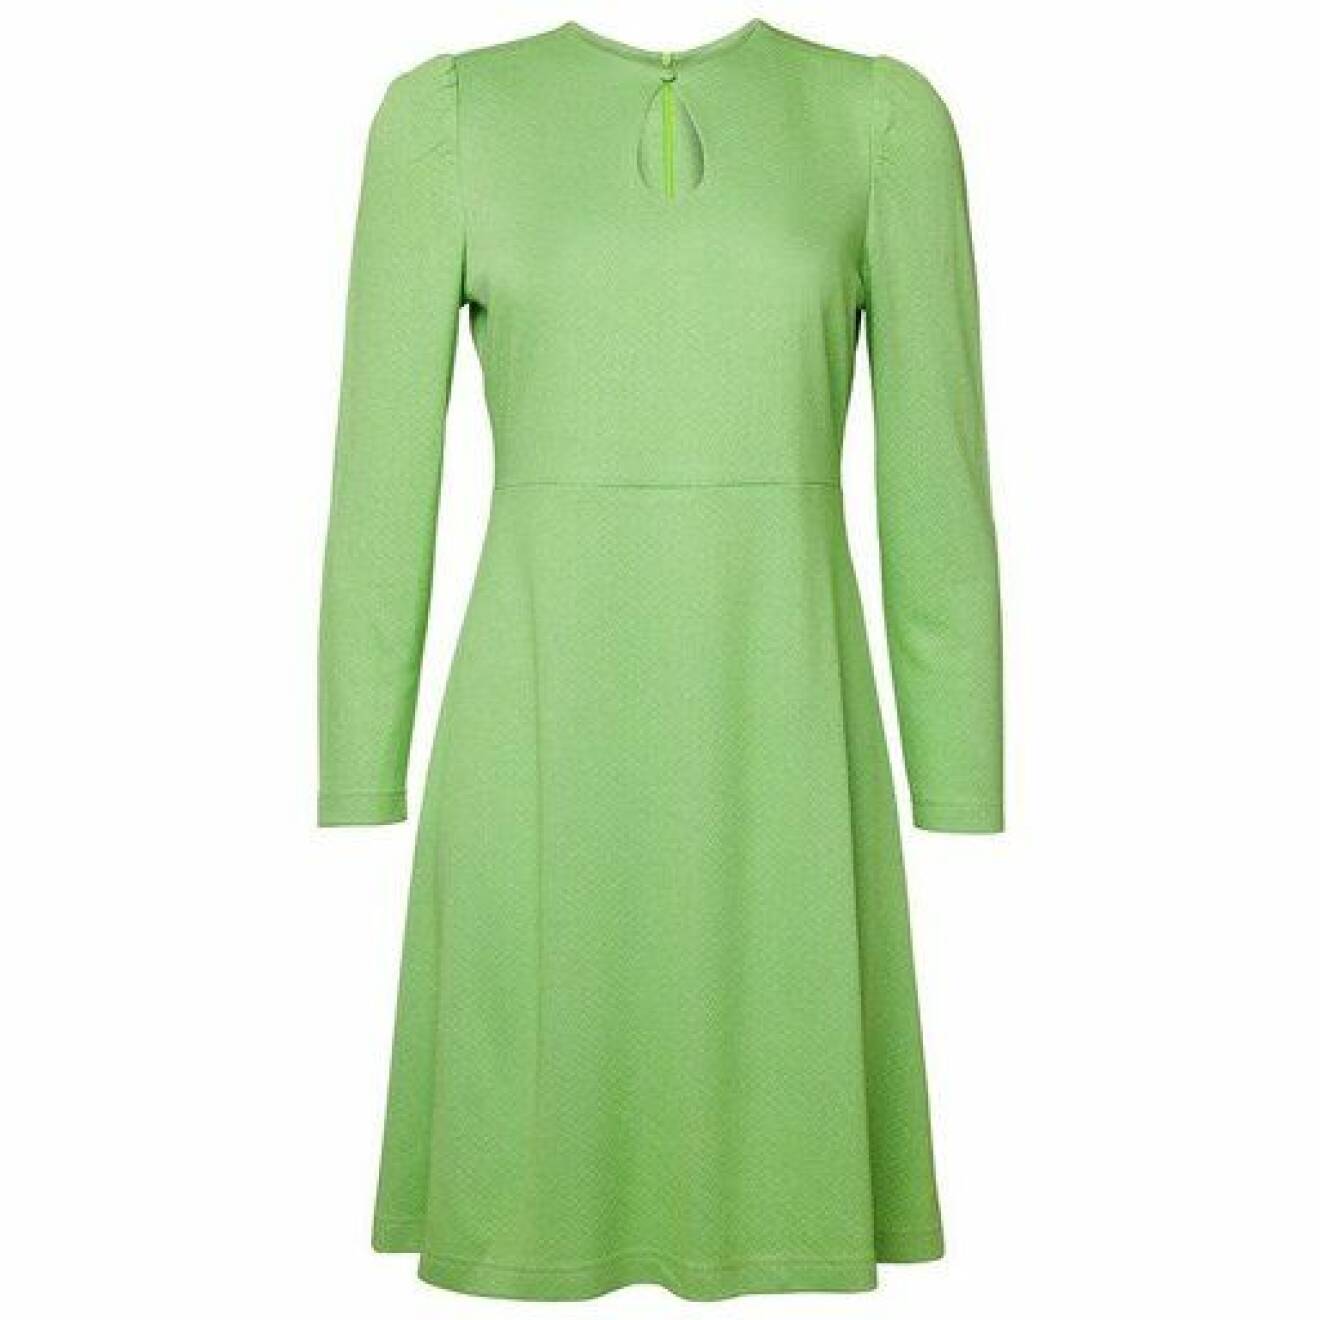 ärtgrön klänning från Jumperfabriken